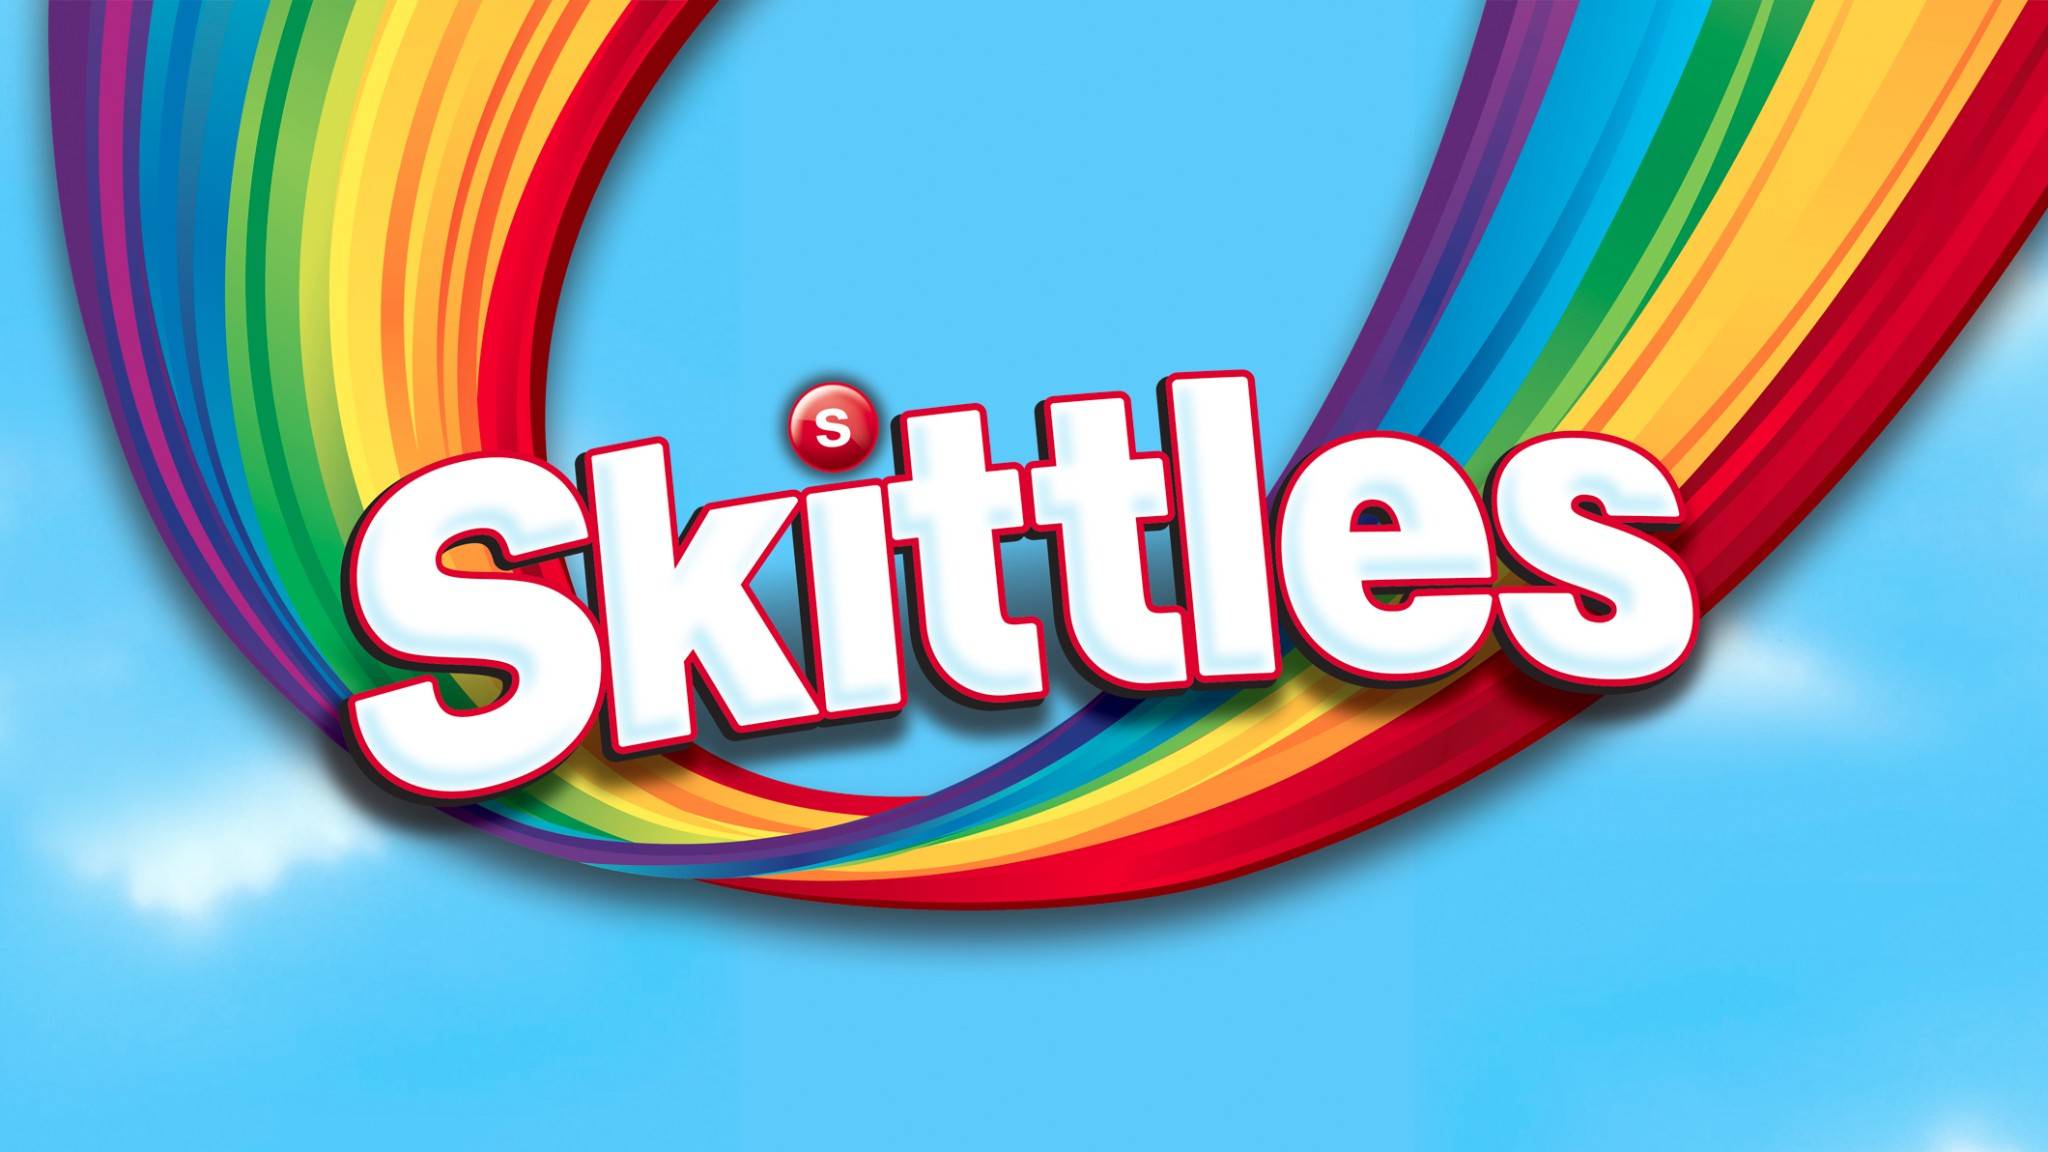 Download Skittles Logos